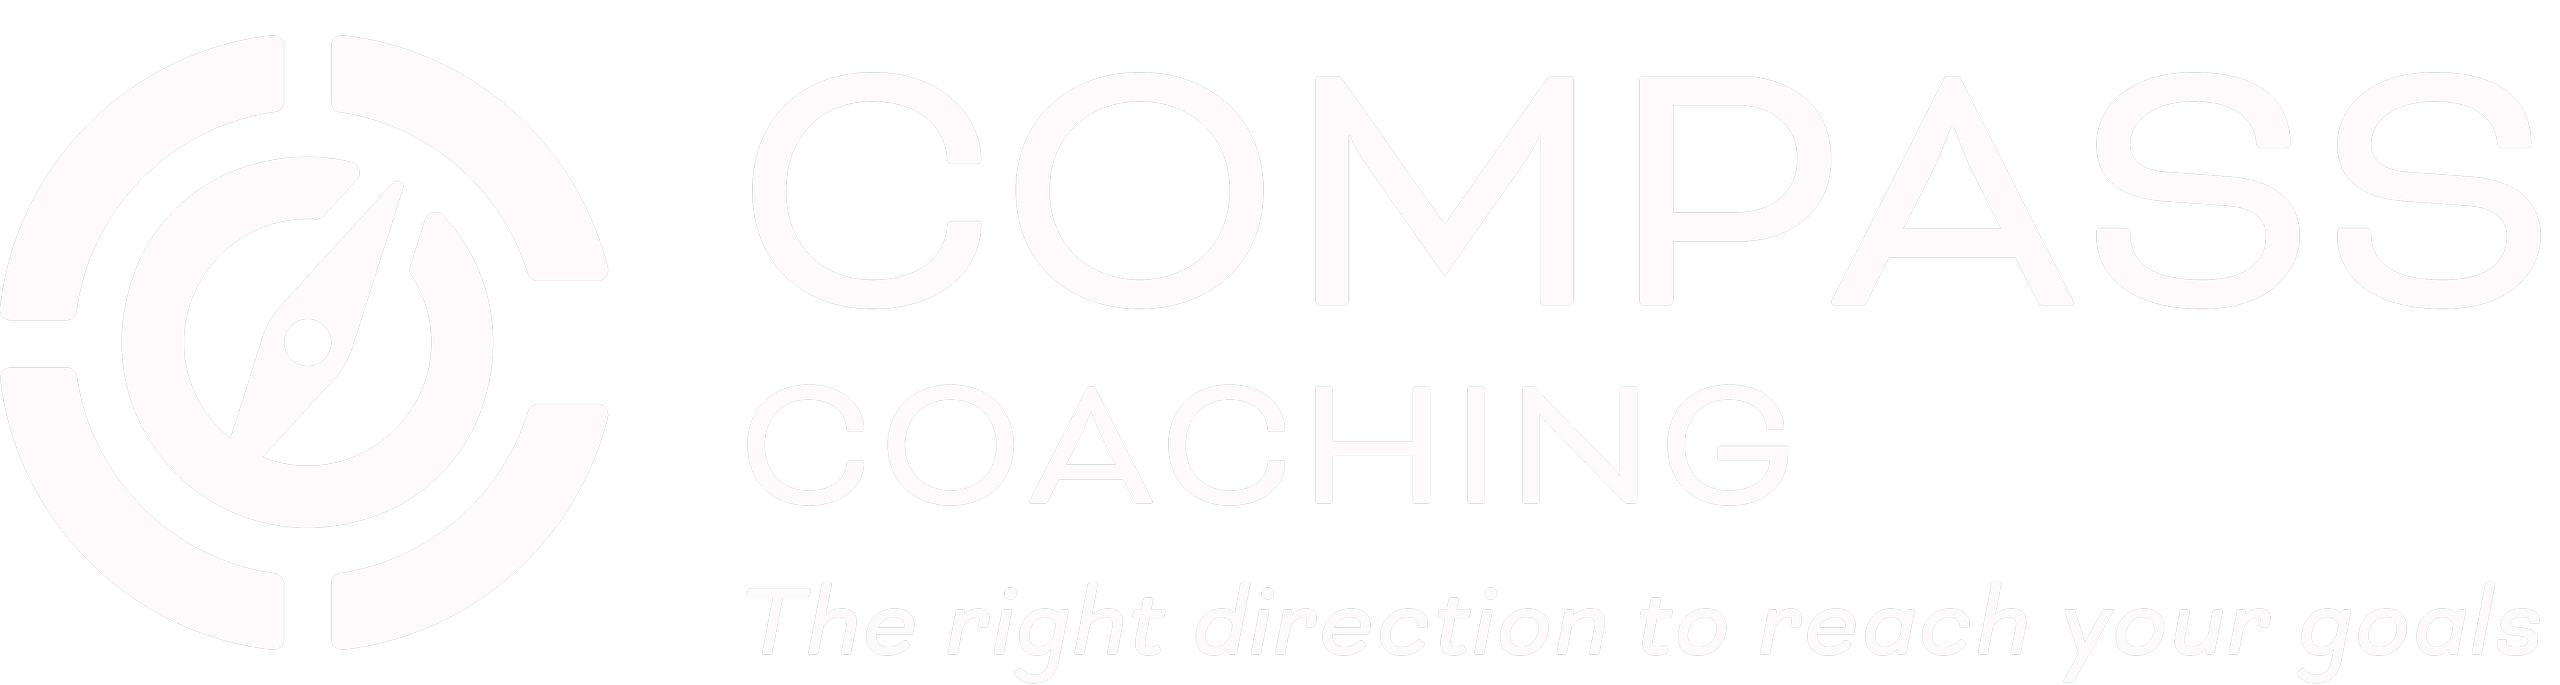 Compass Coaching